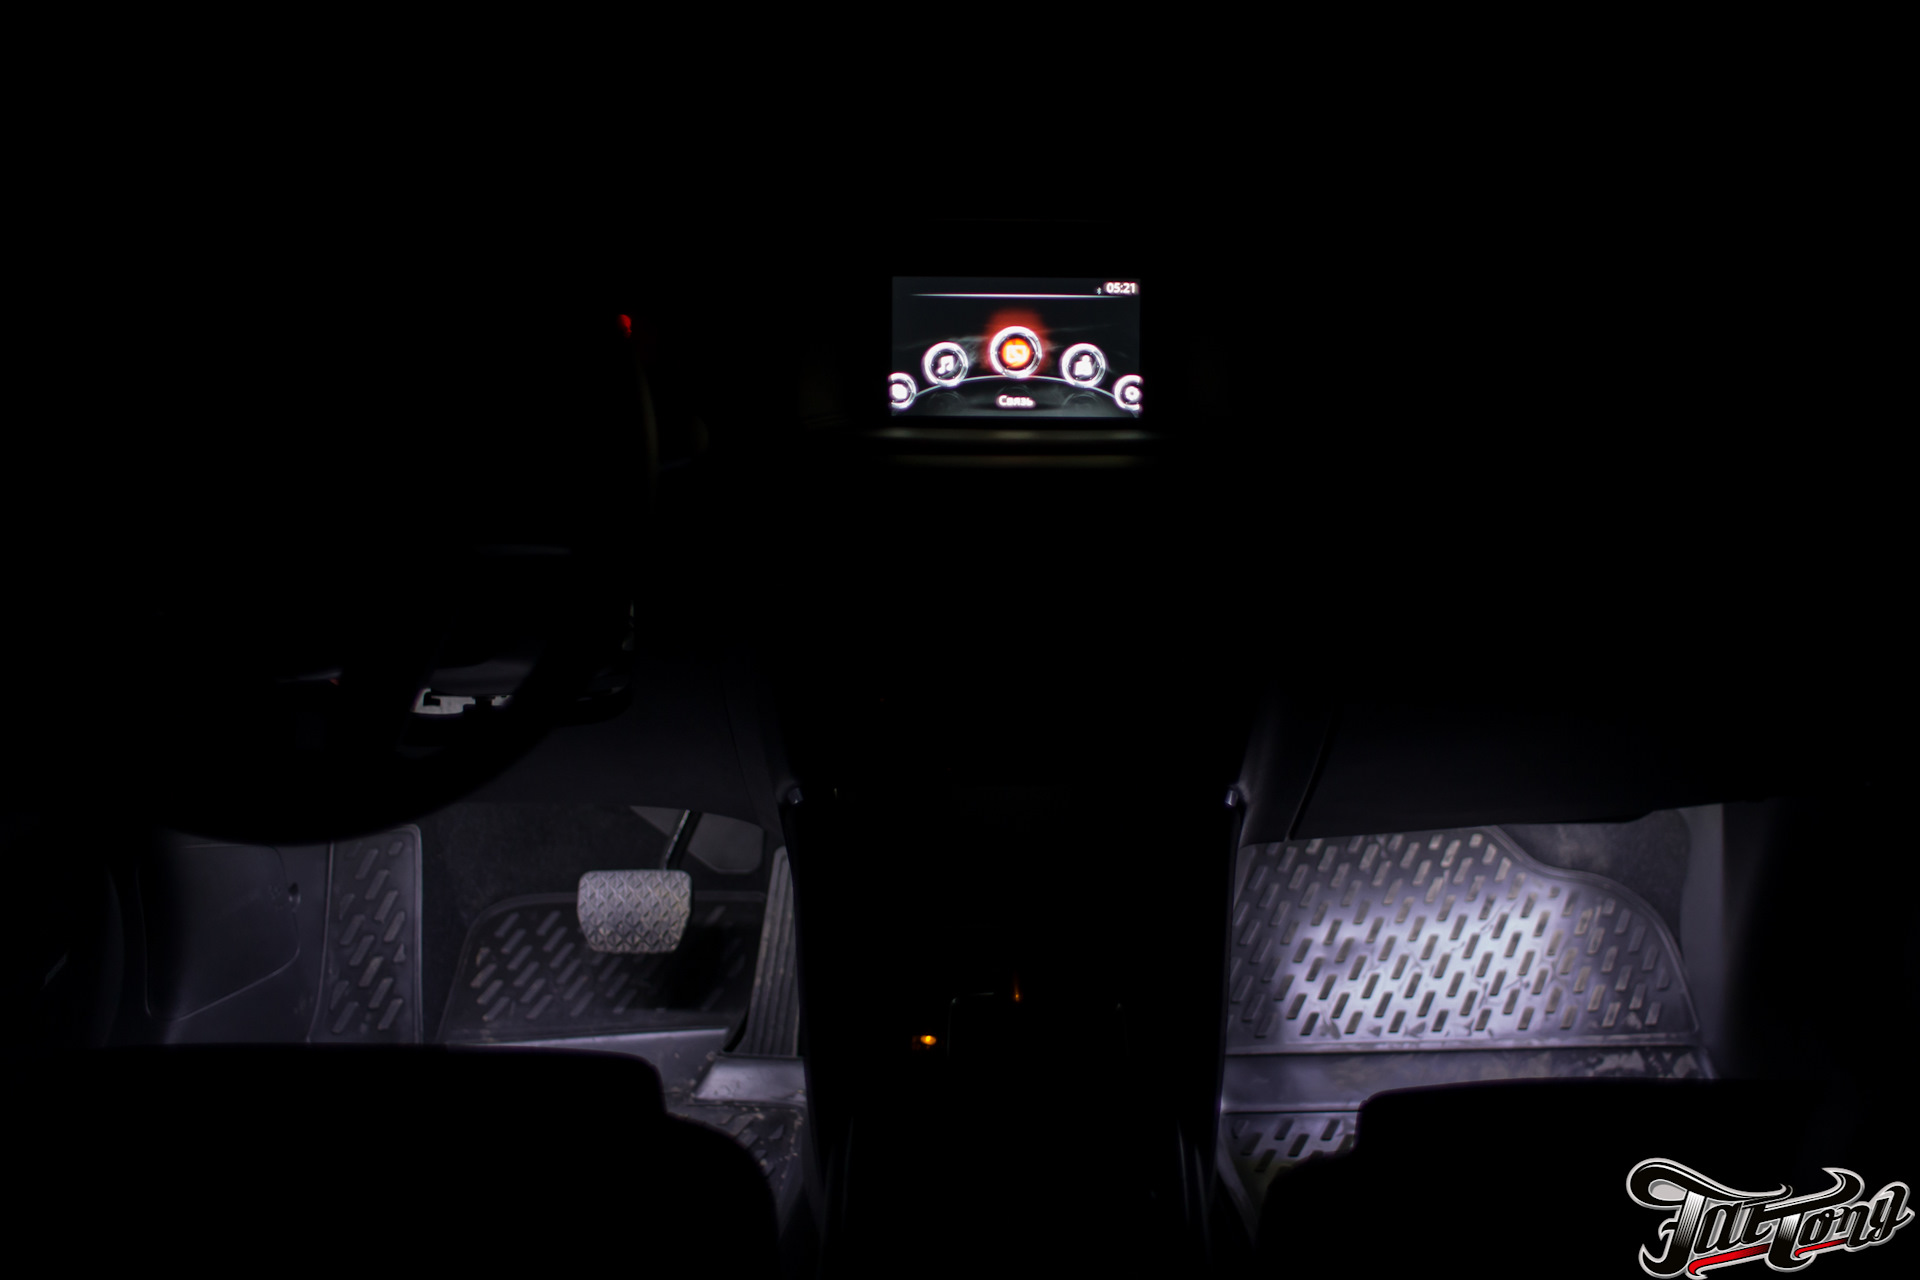 Подсветка мазда сх5. Подсветка салона Мазда cx5. Подсветка салона Mazda CX-5. Led подсветка салона Мазда CX-5. Подсветка салона Мазда СХ 5 2018.